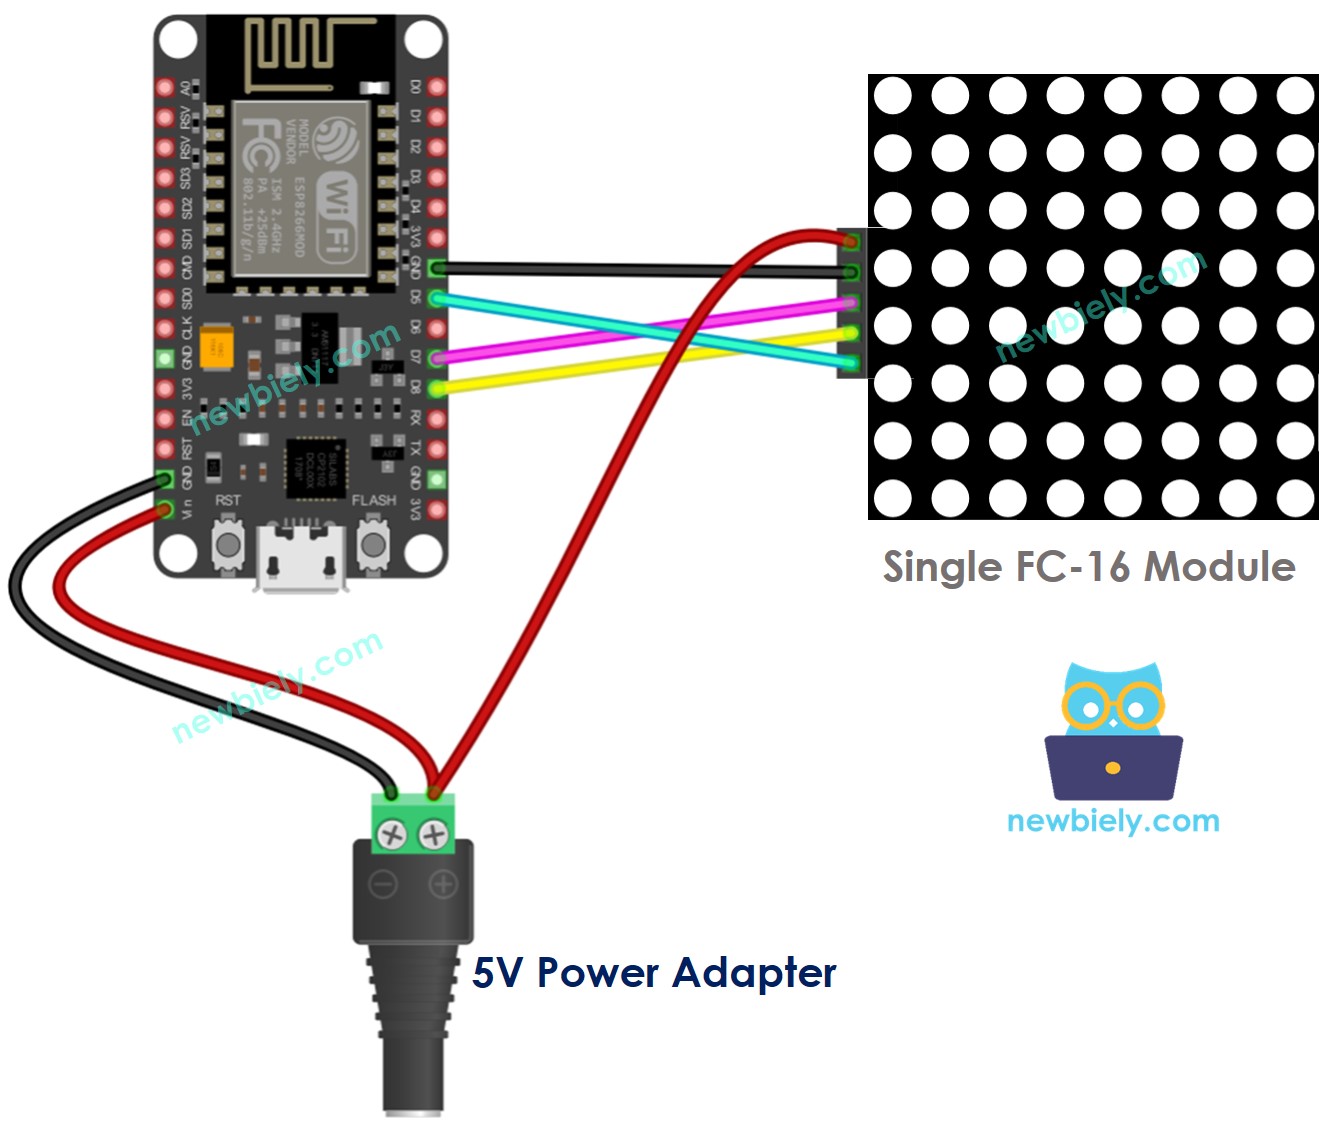 The wiring diagram between ESP8266 NodeMCU and 8x8 LED matrix FC-16